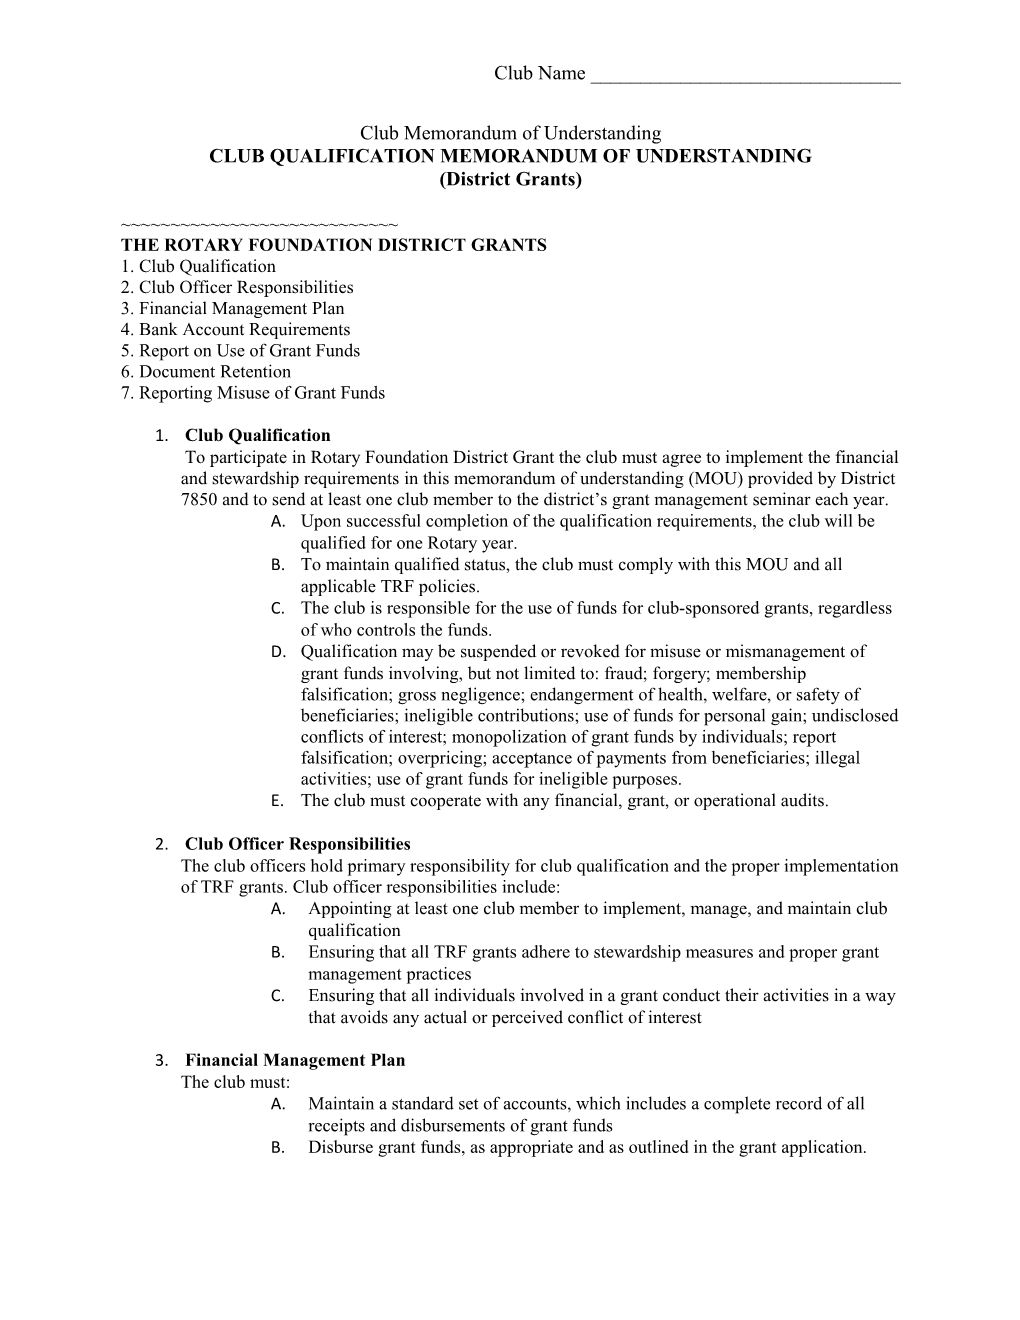 Club Qualification Memorandum of Understanding